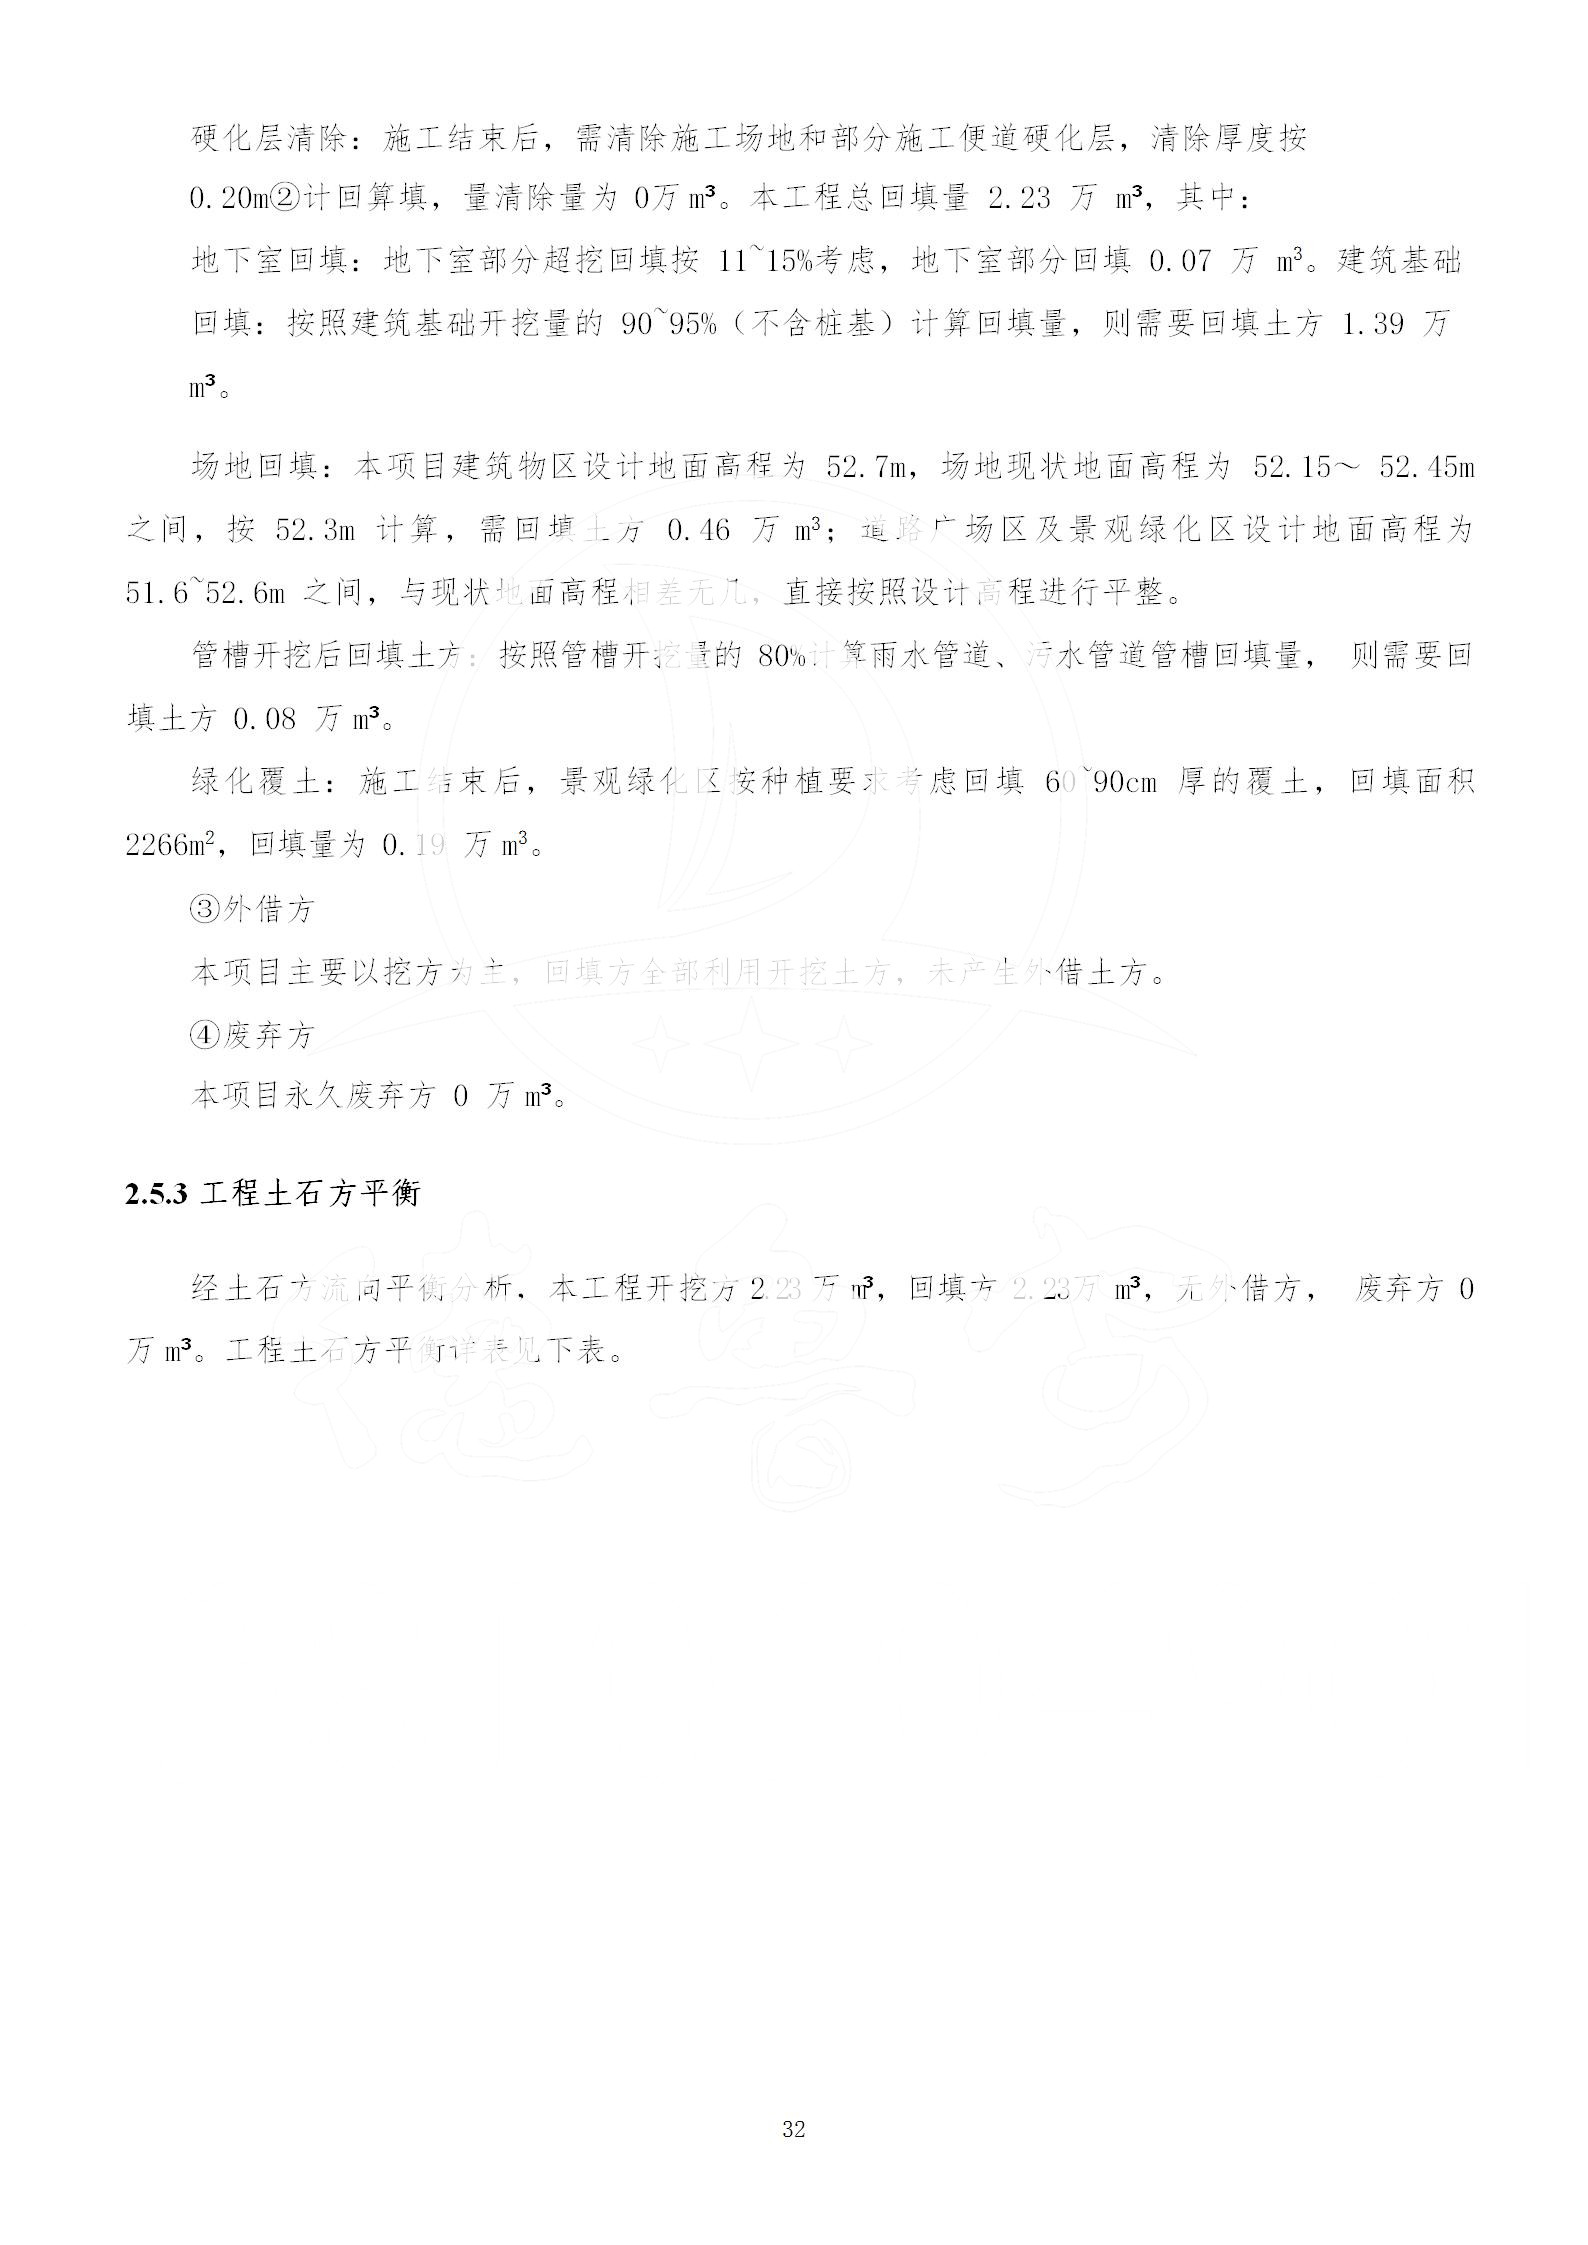 广东省大圣寺水土保持报告  修改稿5_32.jpg